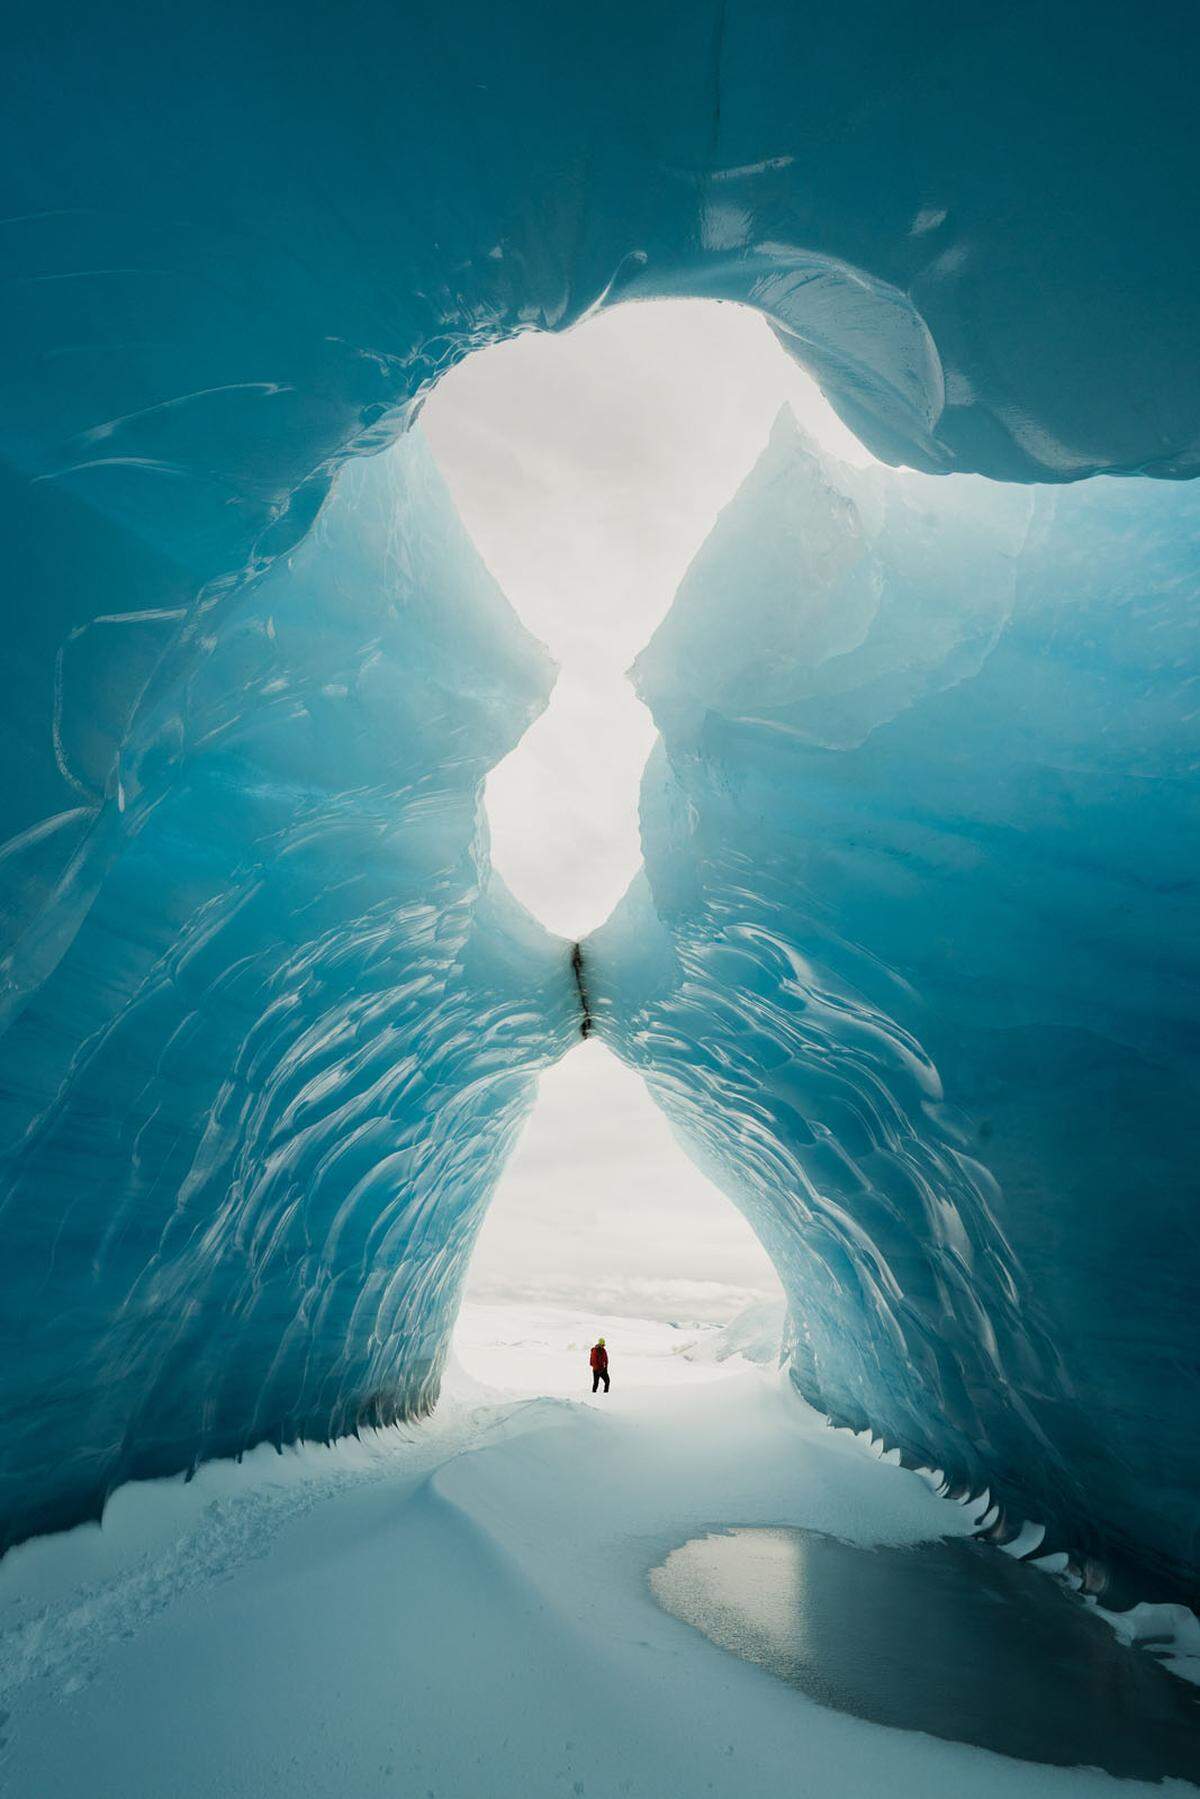 Eine natürliche Eishöhle im Inneren eines Gletschers in Island hat ein Schwede festgehalten. "Die Geschwindigkeit, mit der die Gletscher schmelzen, beunruhigt mich." Er wünscht sich eine Welt, in der zukünftige Generationen auch noch diesen Anblick genießen können.